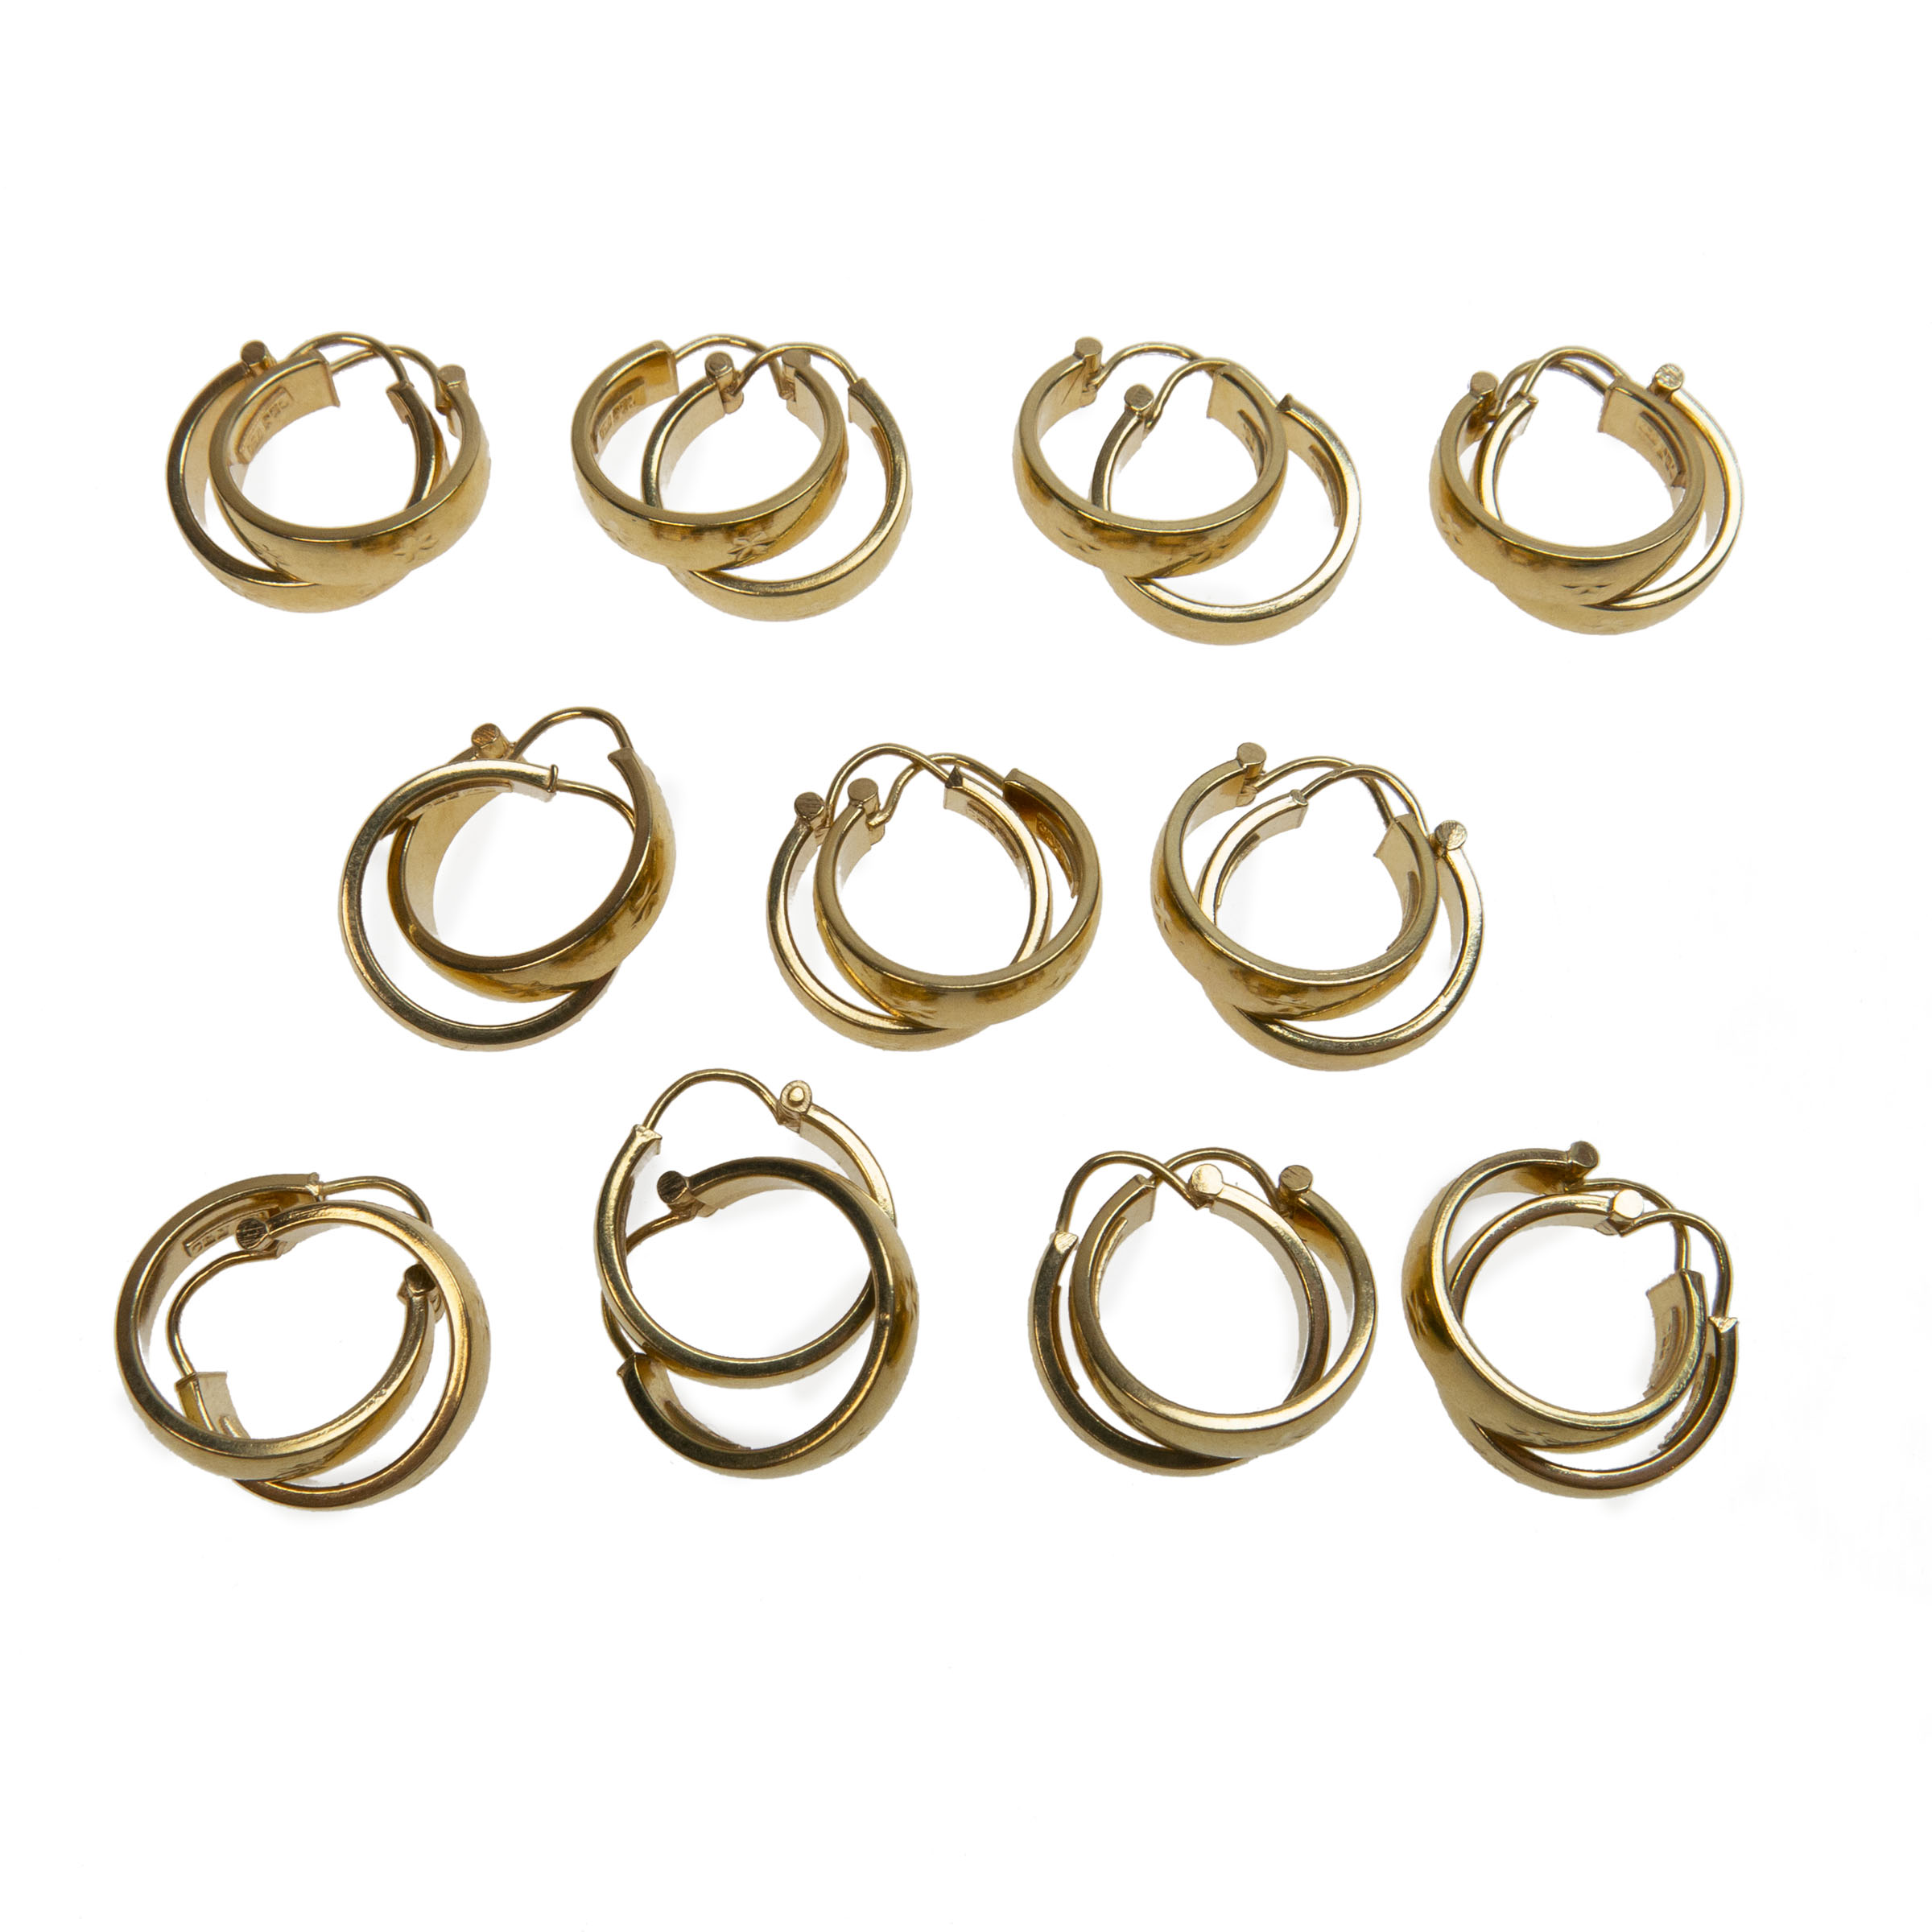 11 X Pairs Of 18K Yellow Gold Hoop Earrings